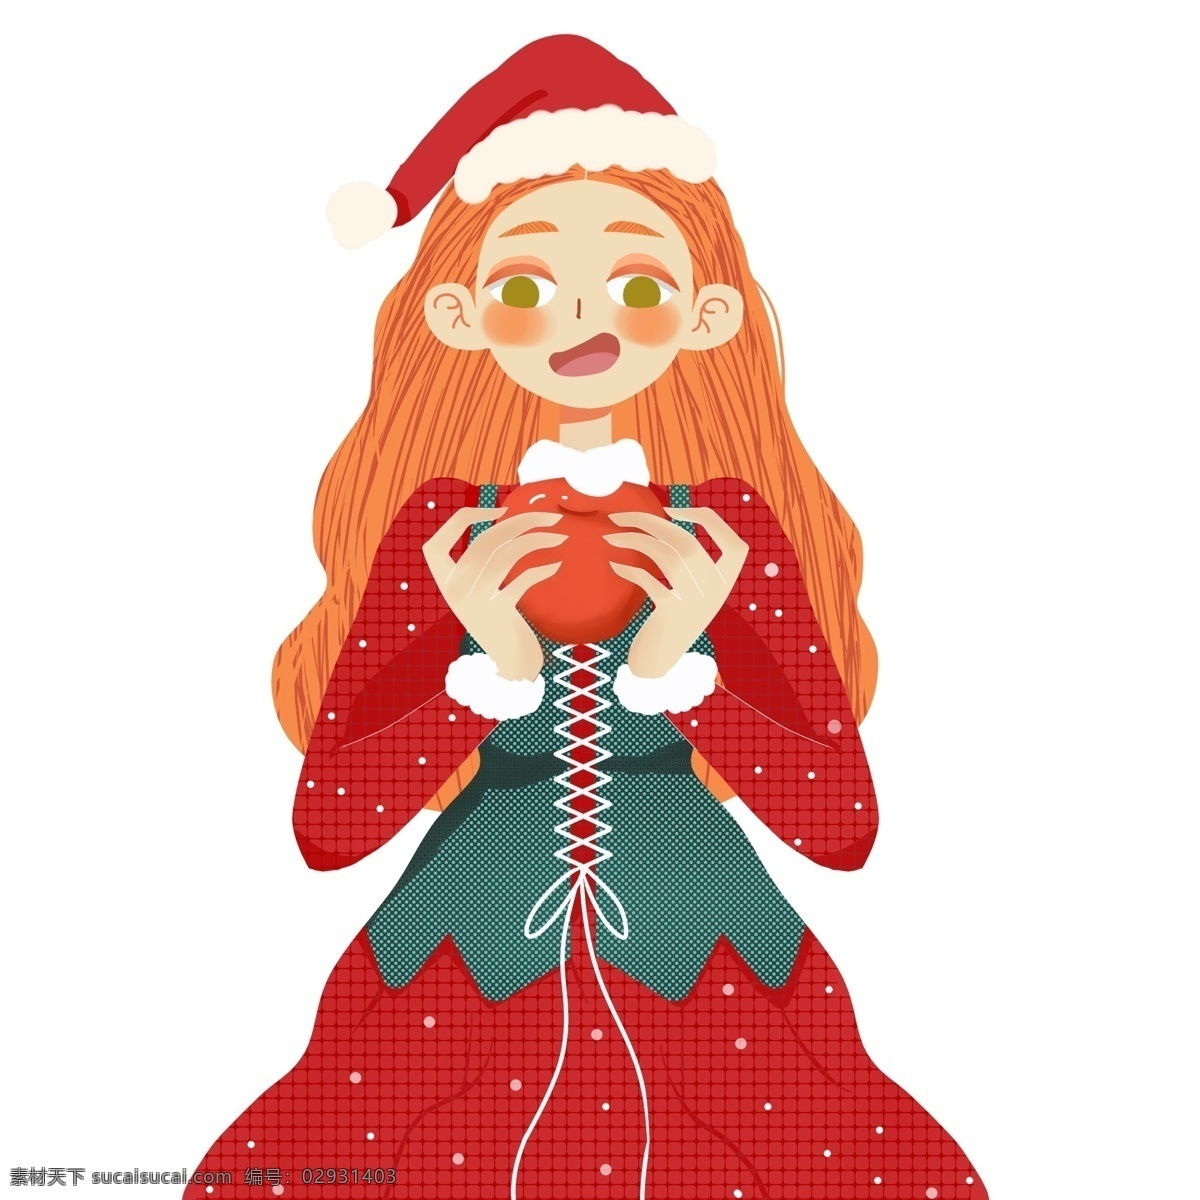 圣诞节 吃 苹果 女孩 手绘 卡通 插画 平安夜 圣诞帽 少女 人物设计